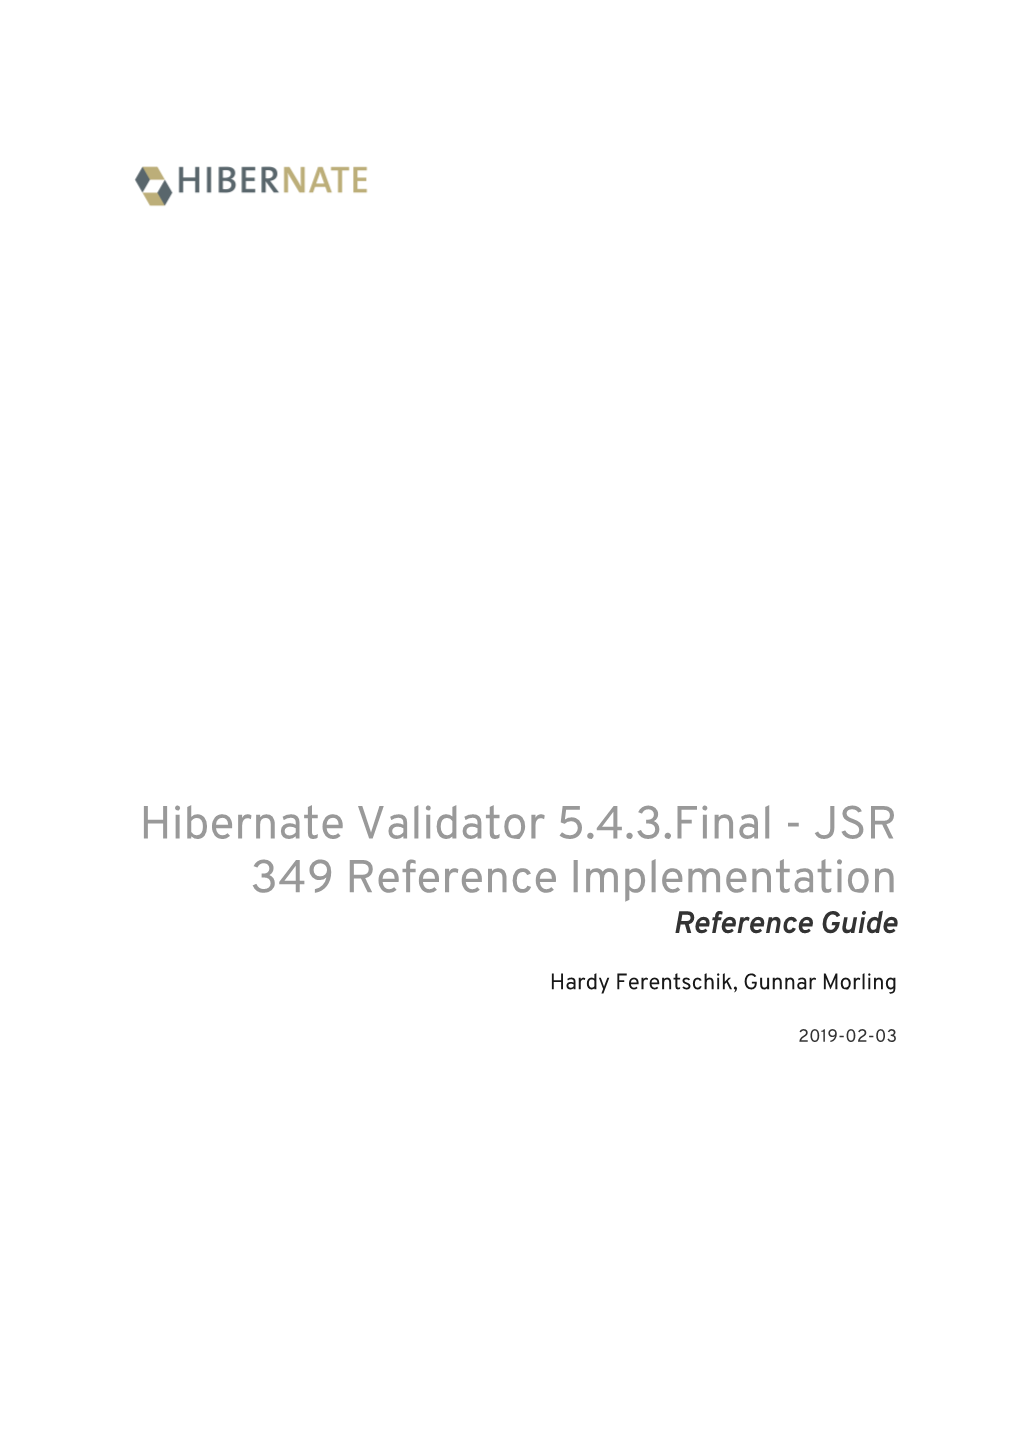 Hibernate Validator 5.4.3.Final - JSR 349 Reference Implementation Reference Guide